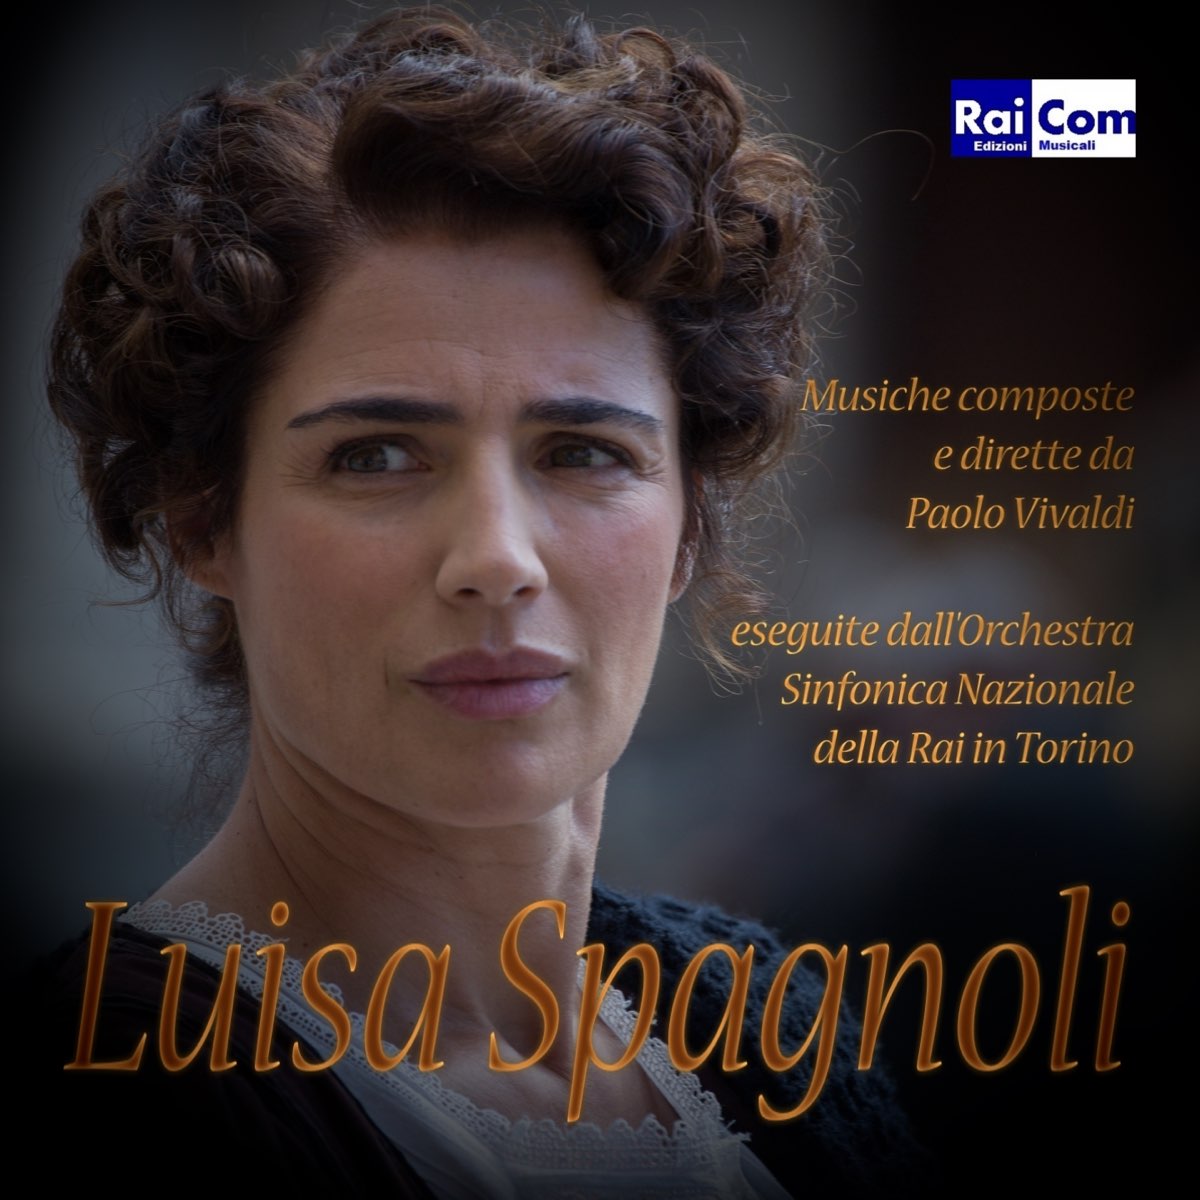 Luisa Spagnoli (feat. Orchestra Sinfonica Nazionale della RAI di Torino)  [Colonna sonora originale Fiction TV] - Album by Paolo Vivaldi - Apple Music